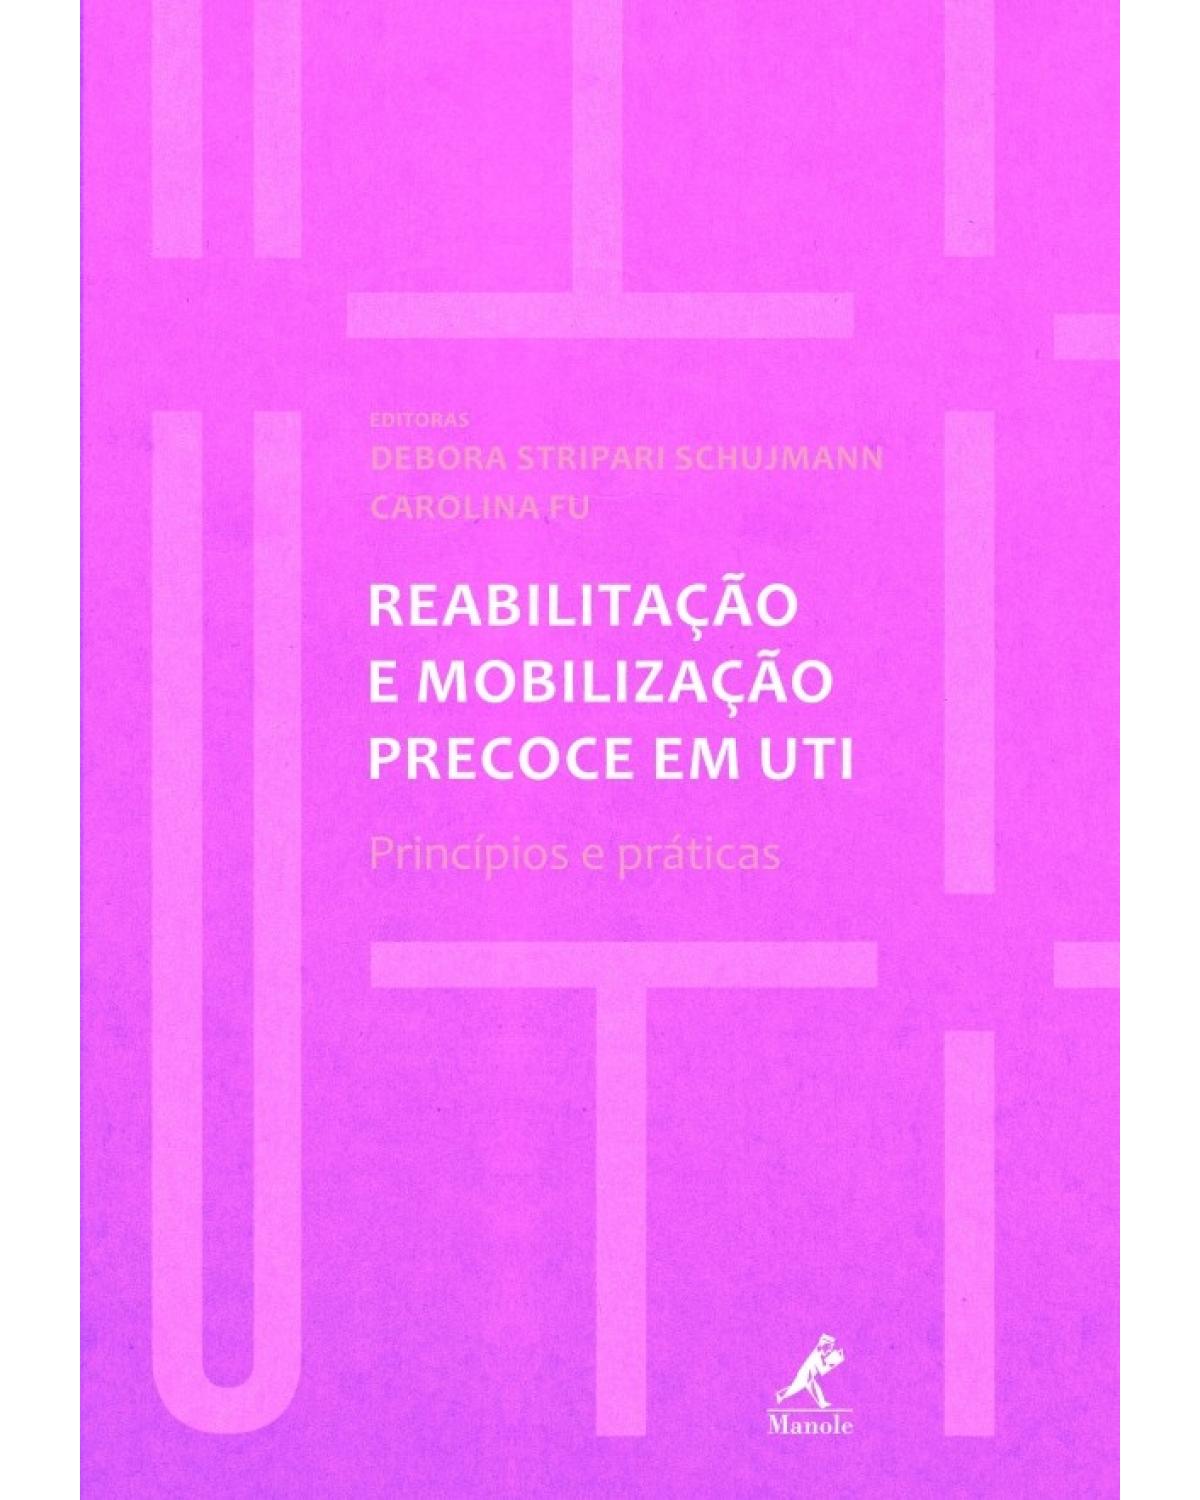 Reabilitação e mobilização precoce em UTI - princípios e práticas - 1ª Edição | 2018